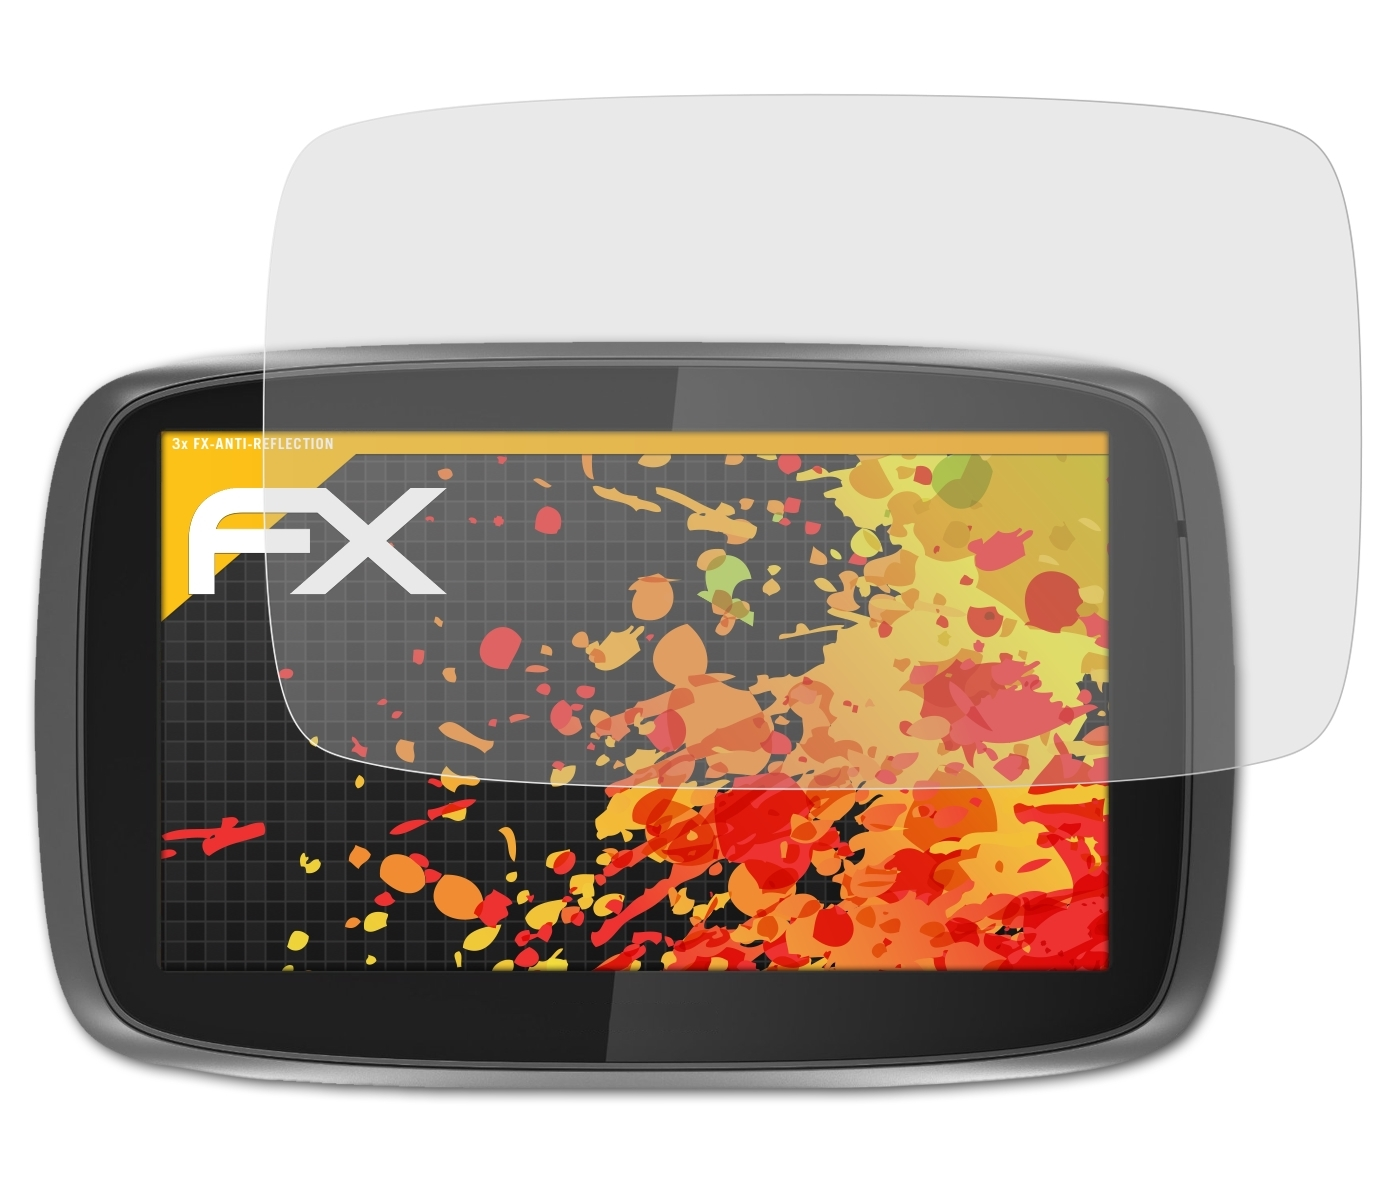 (2014)) 3x Speak&Go Displayschutz(für 500 GO ATFOLIX FX-Antireflex TomTom